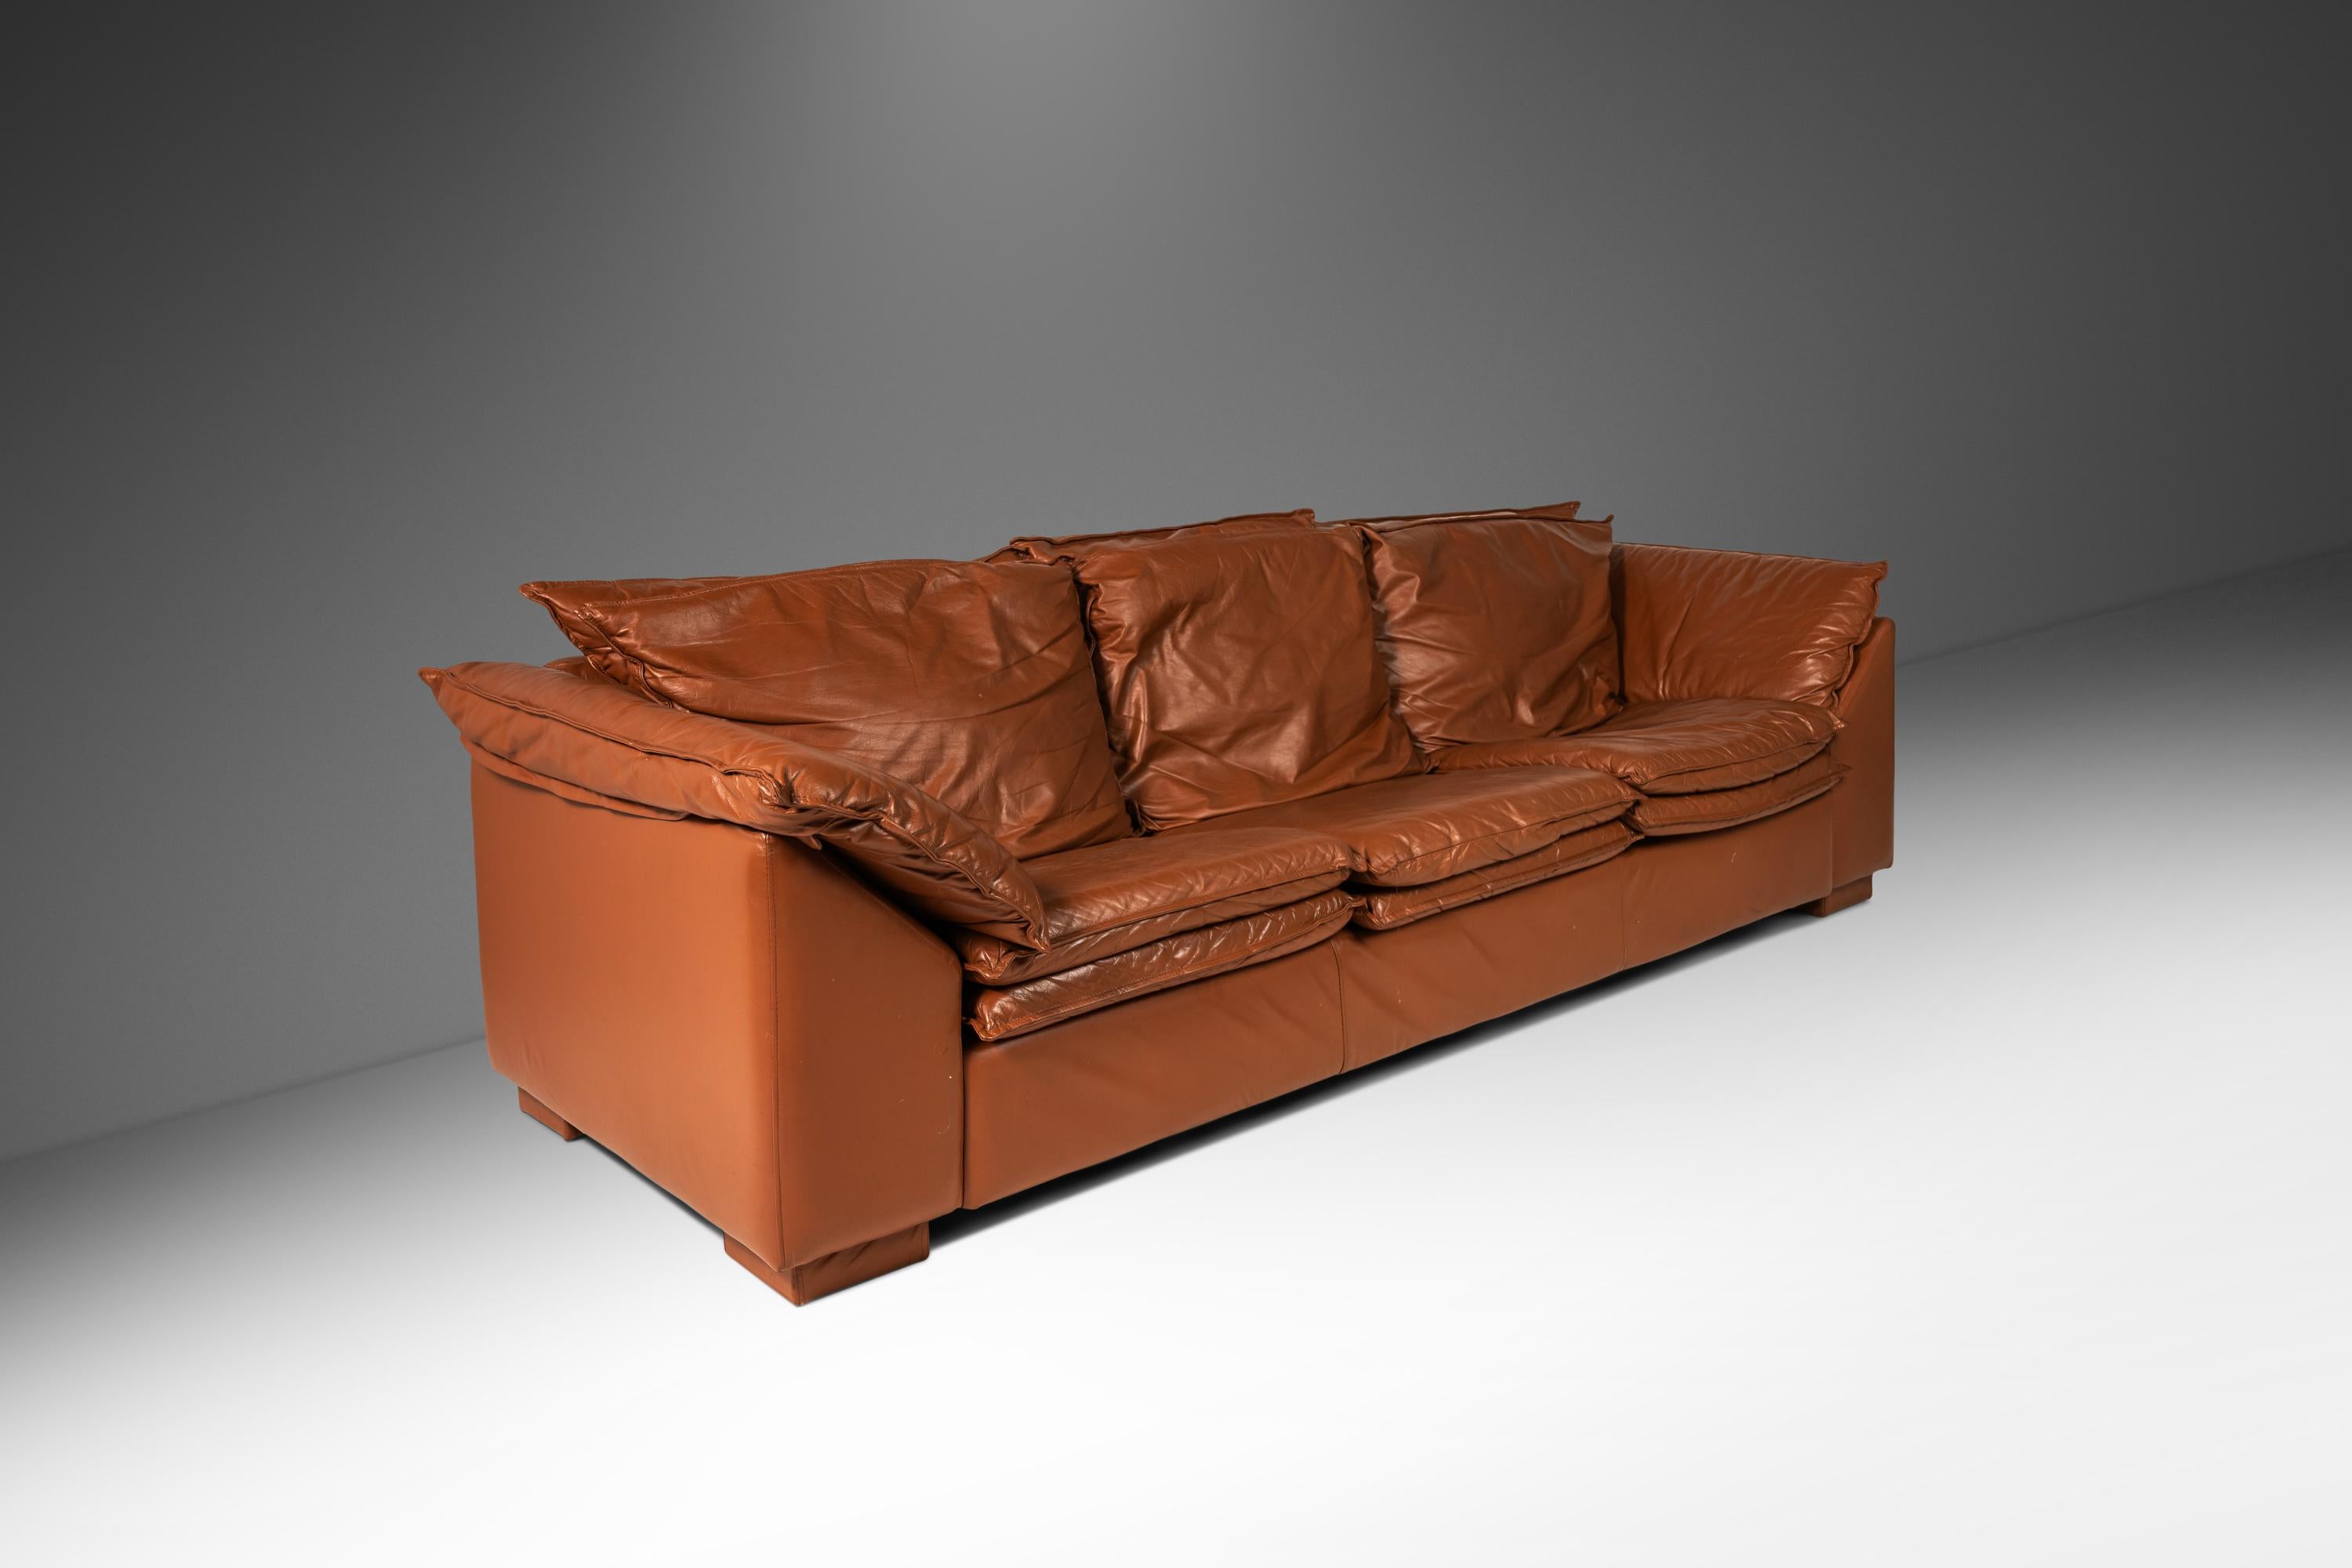 Aussi confortable qu'attrayant visuellement, cet ensemble de canapés à profil bas, conçu d'après le canapé 